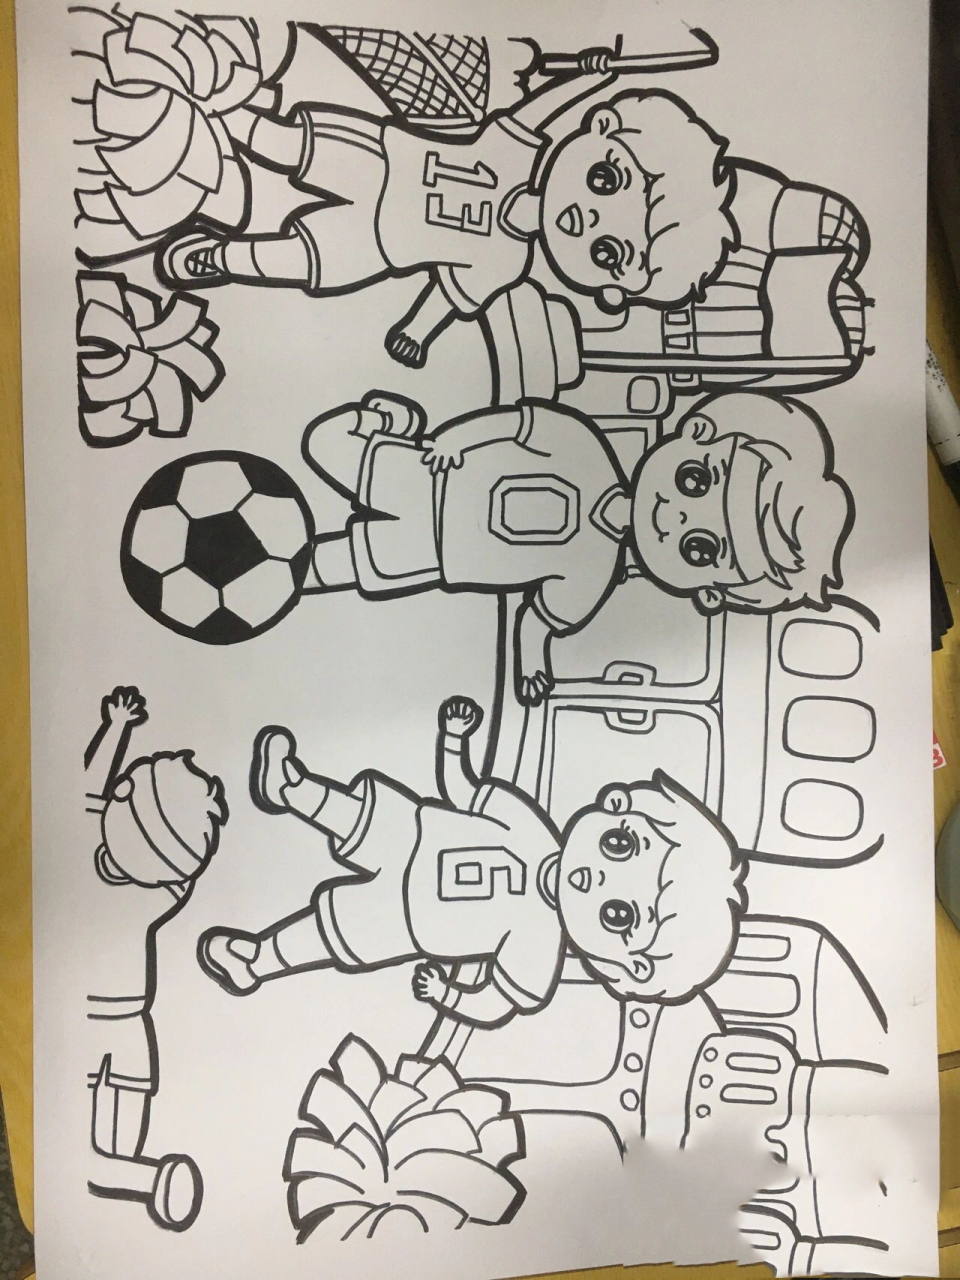 校园一角,体育运动7115主题画 儿童画:校园一角,体育活动线描画